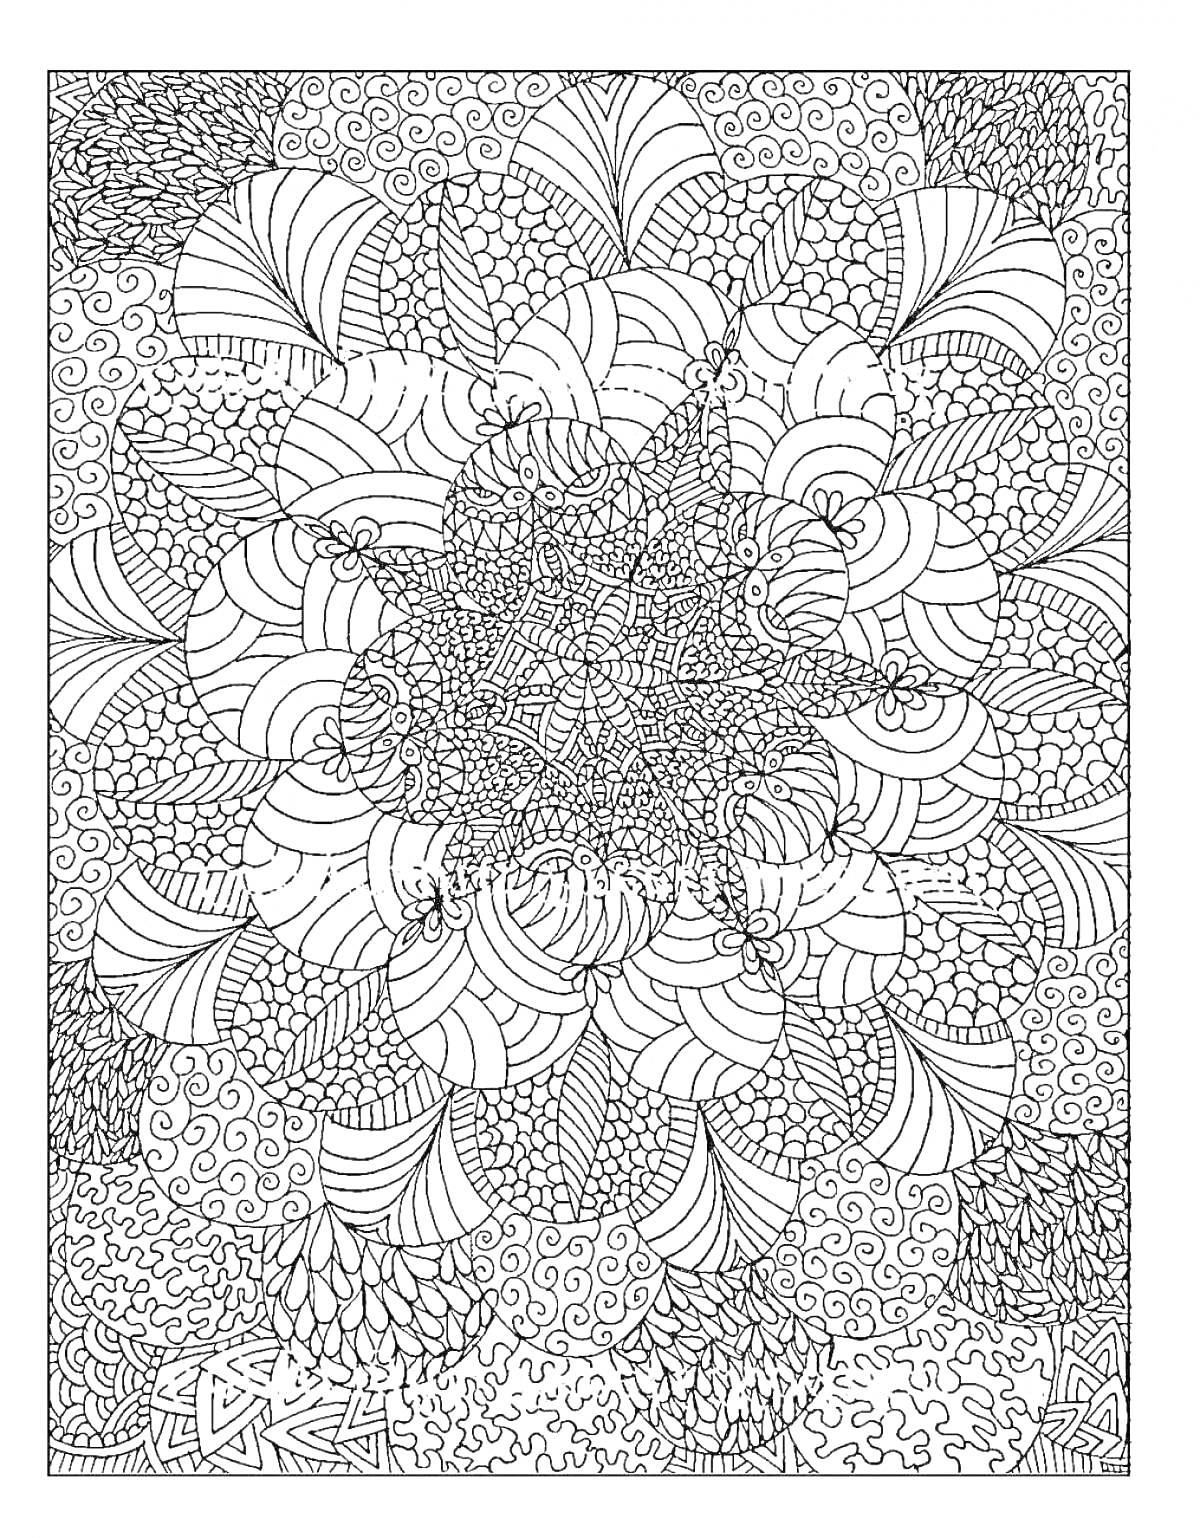 Раскраска Абстрактная антистресс раскраска с цветочным узором и закрученными линиями.